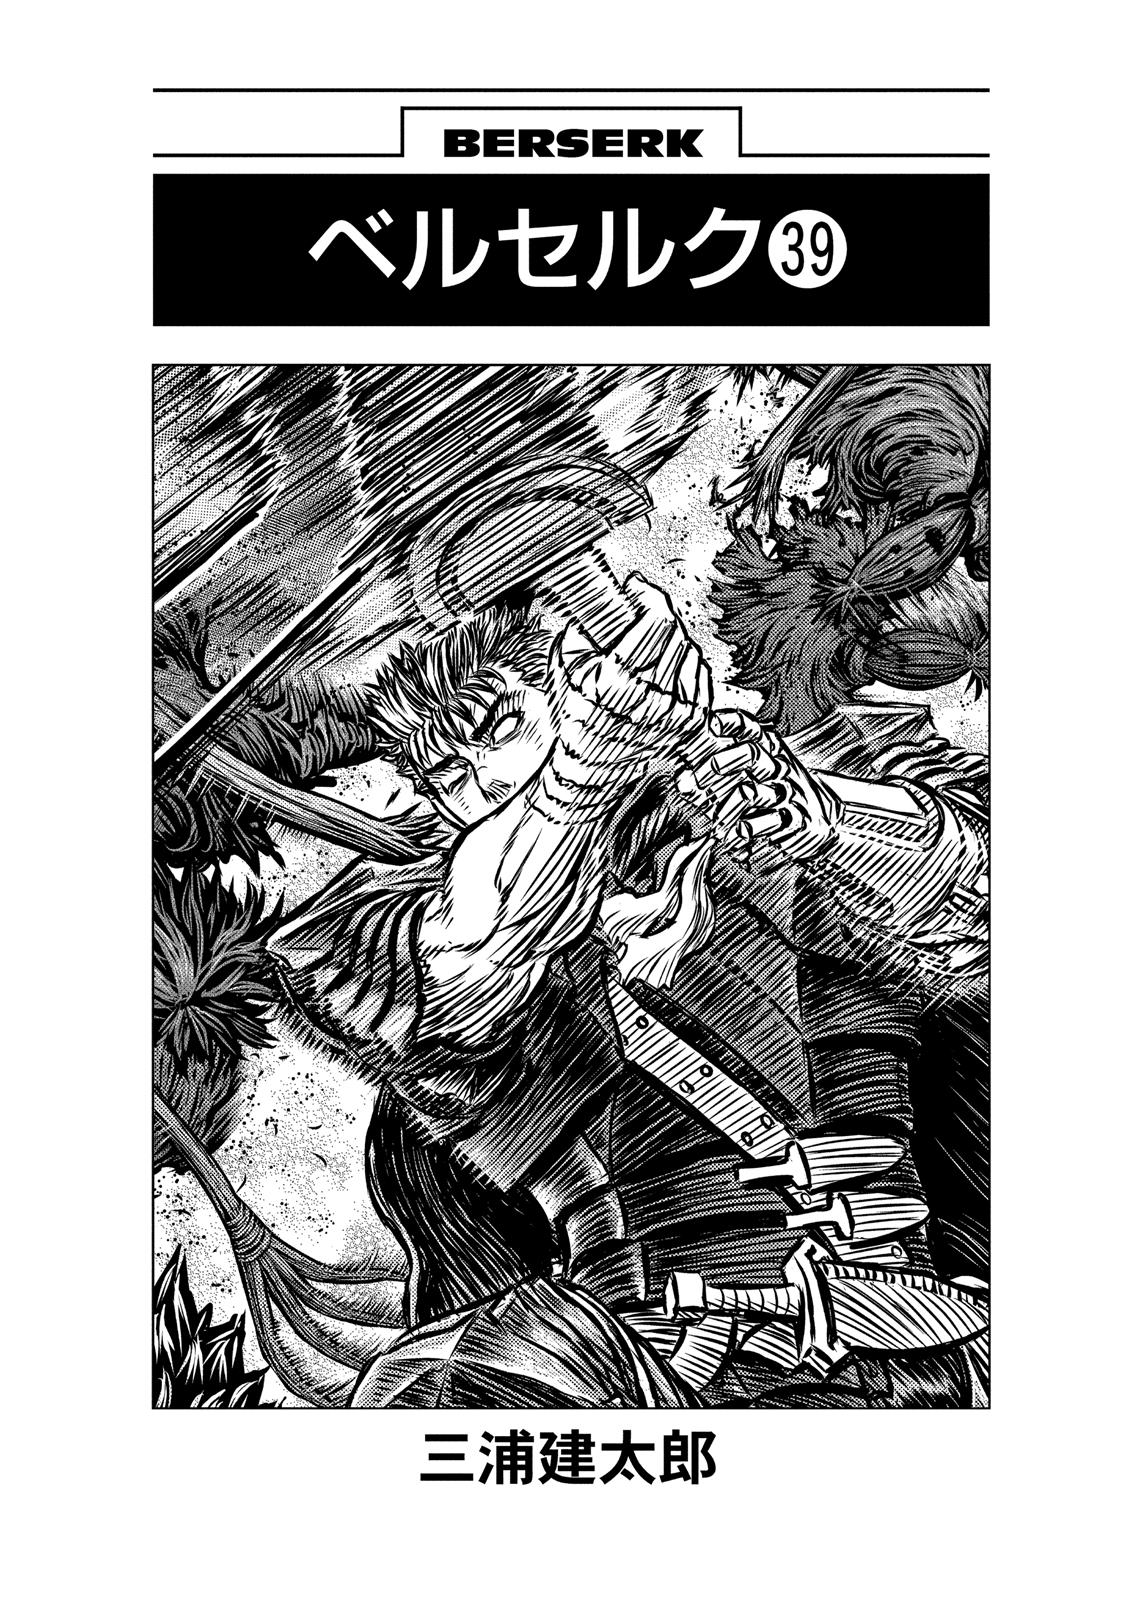 Berserk Manga Chapter 343 image 06